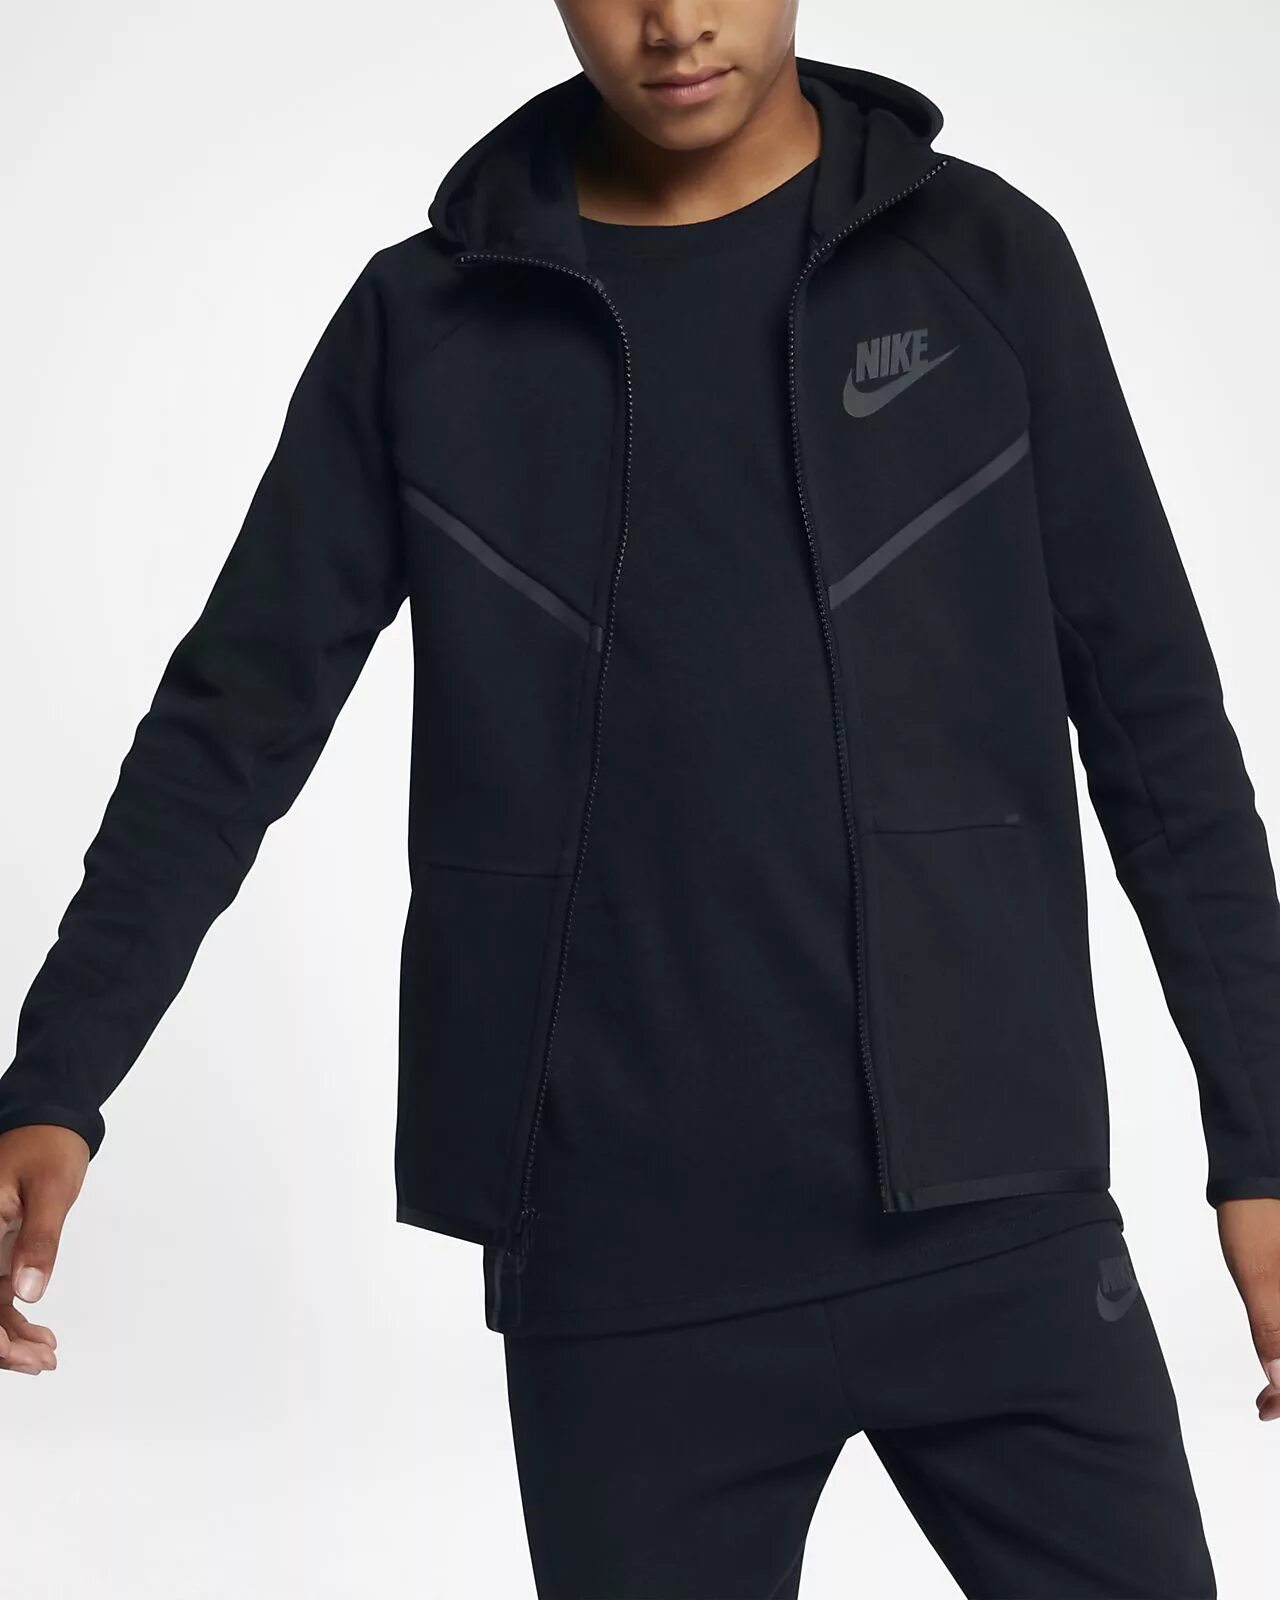 Тефлис. Nike Tech Fleece костюм. Nike Tech Fleece костюм черный. Nike Sportswear Tech Fleece Black. Nike Fleece Tech мужской черный.